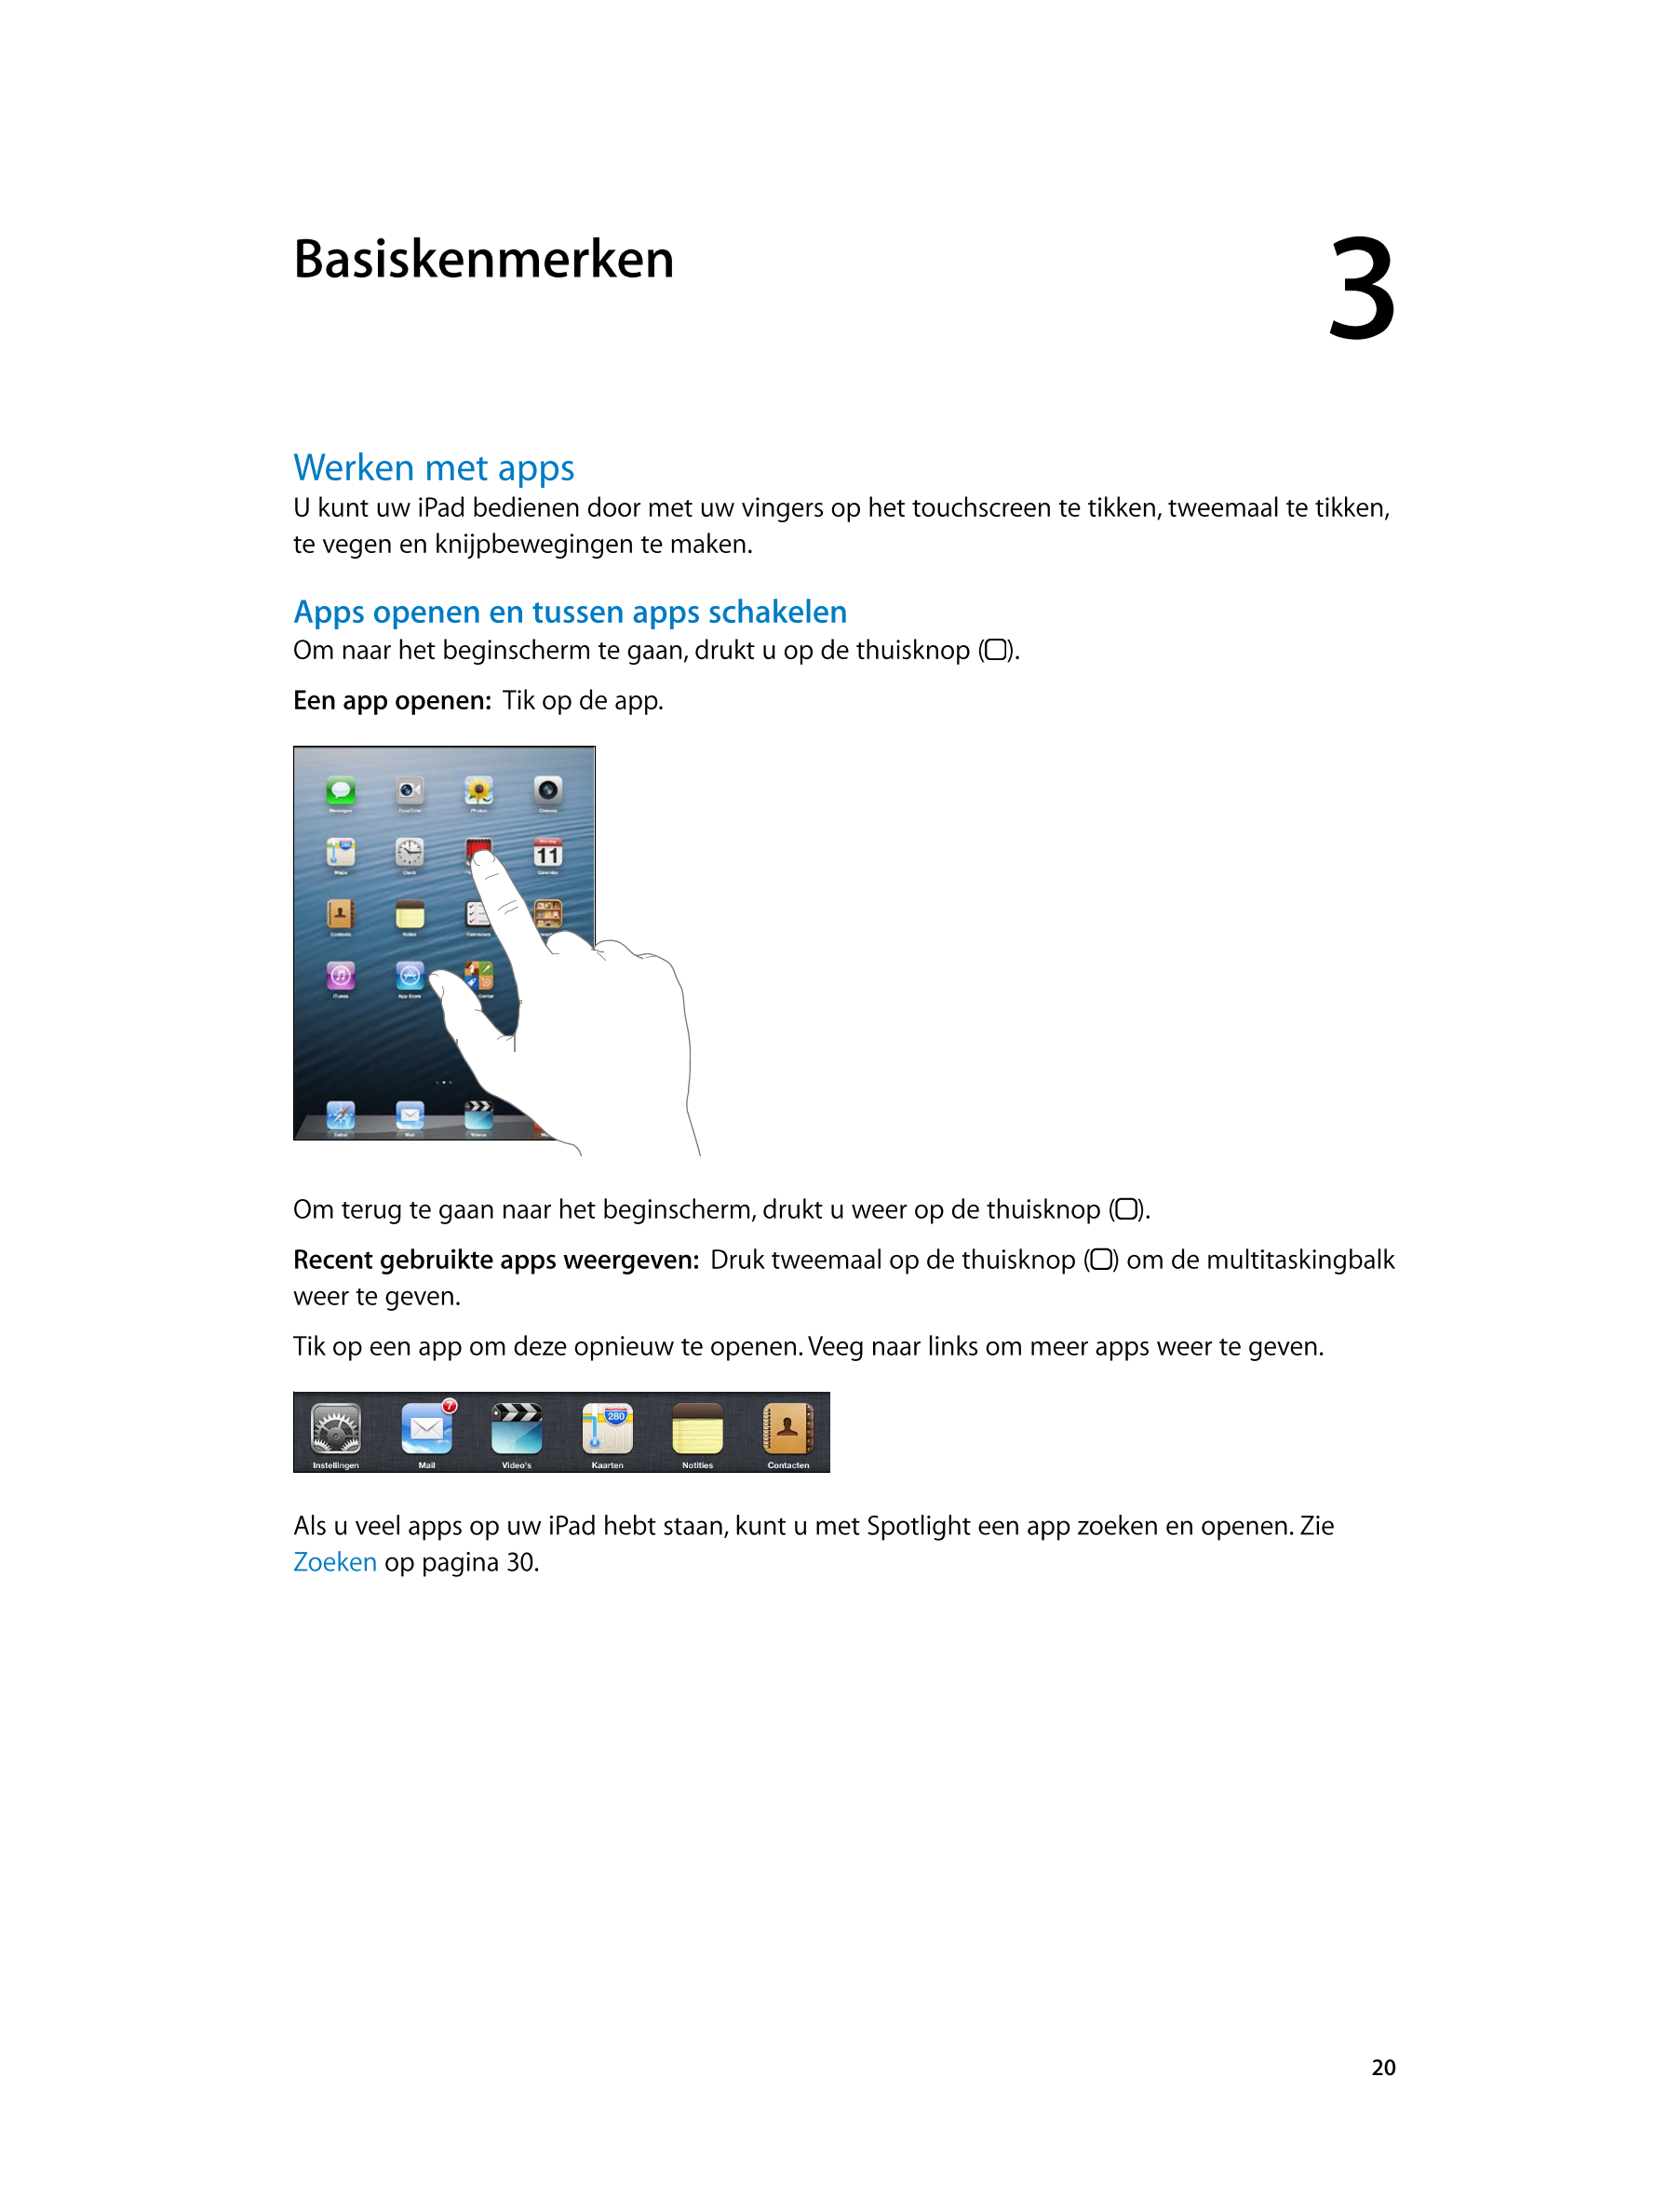   Basiskenmerken 3
Werken met apps
U kunt uw iPad bedienen door met uw vingers op het touchscreen te tikken, tweemaal te tikken,